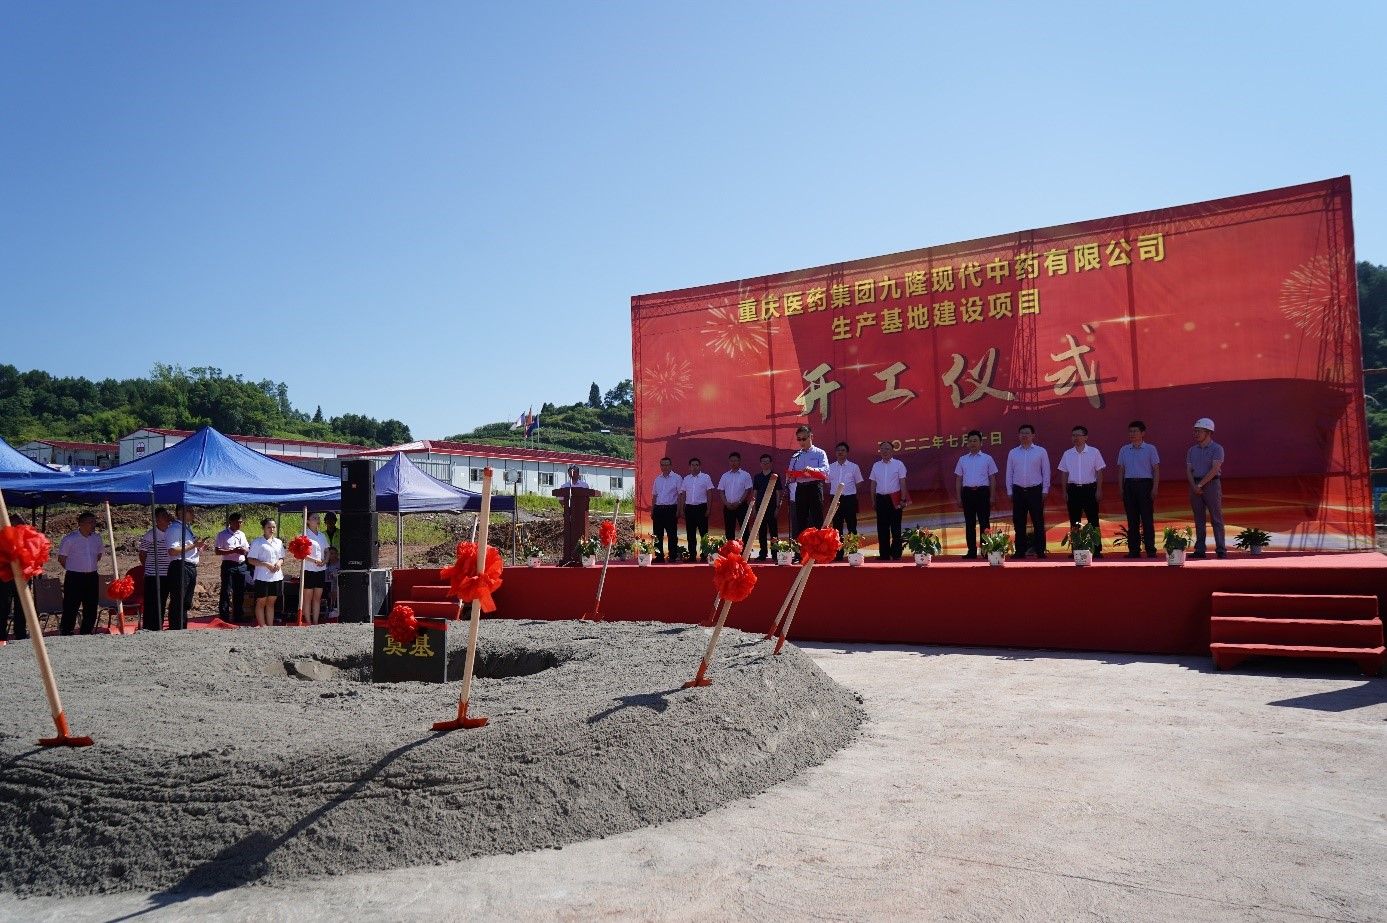 華潤三九與重慶醫藥集團攜手建設“生產基地項目”奠基開工